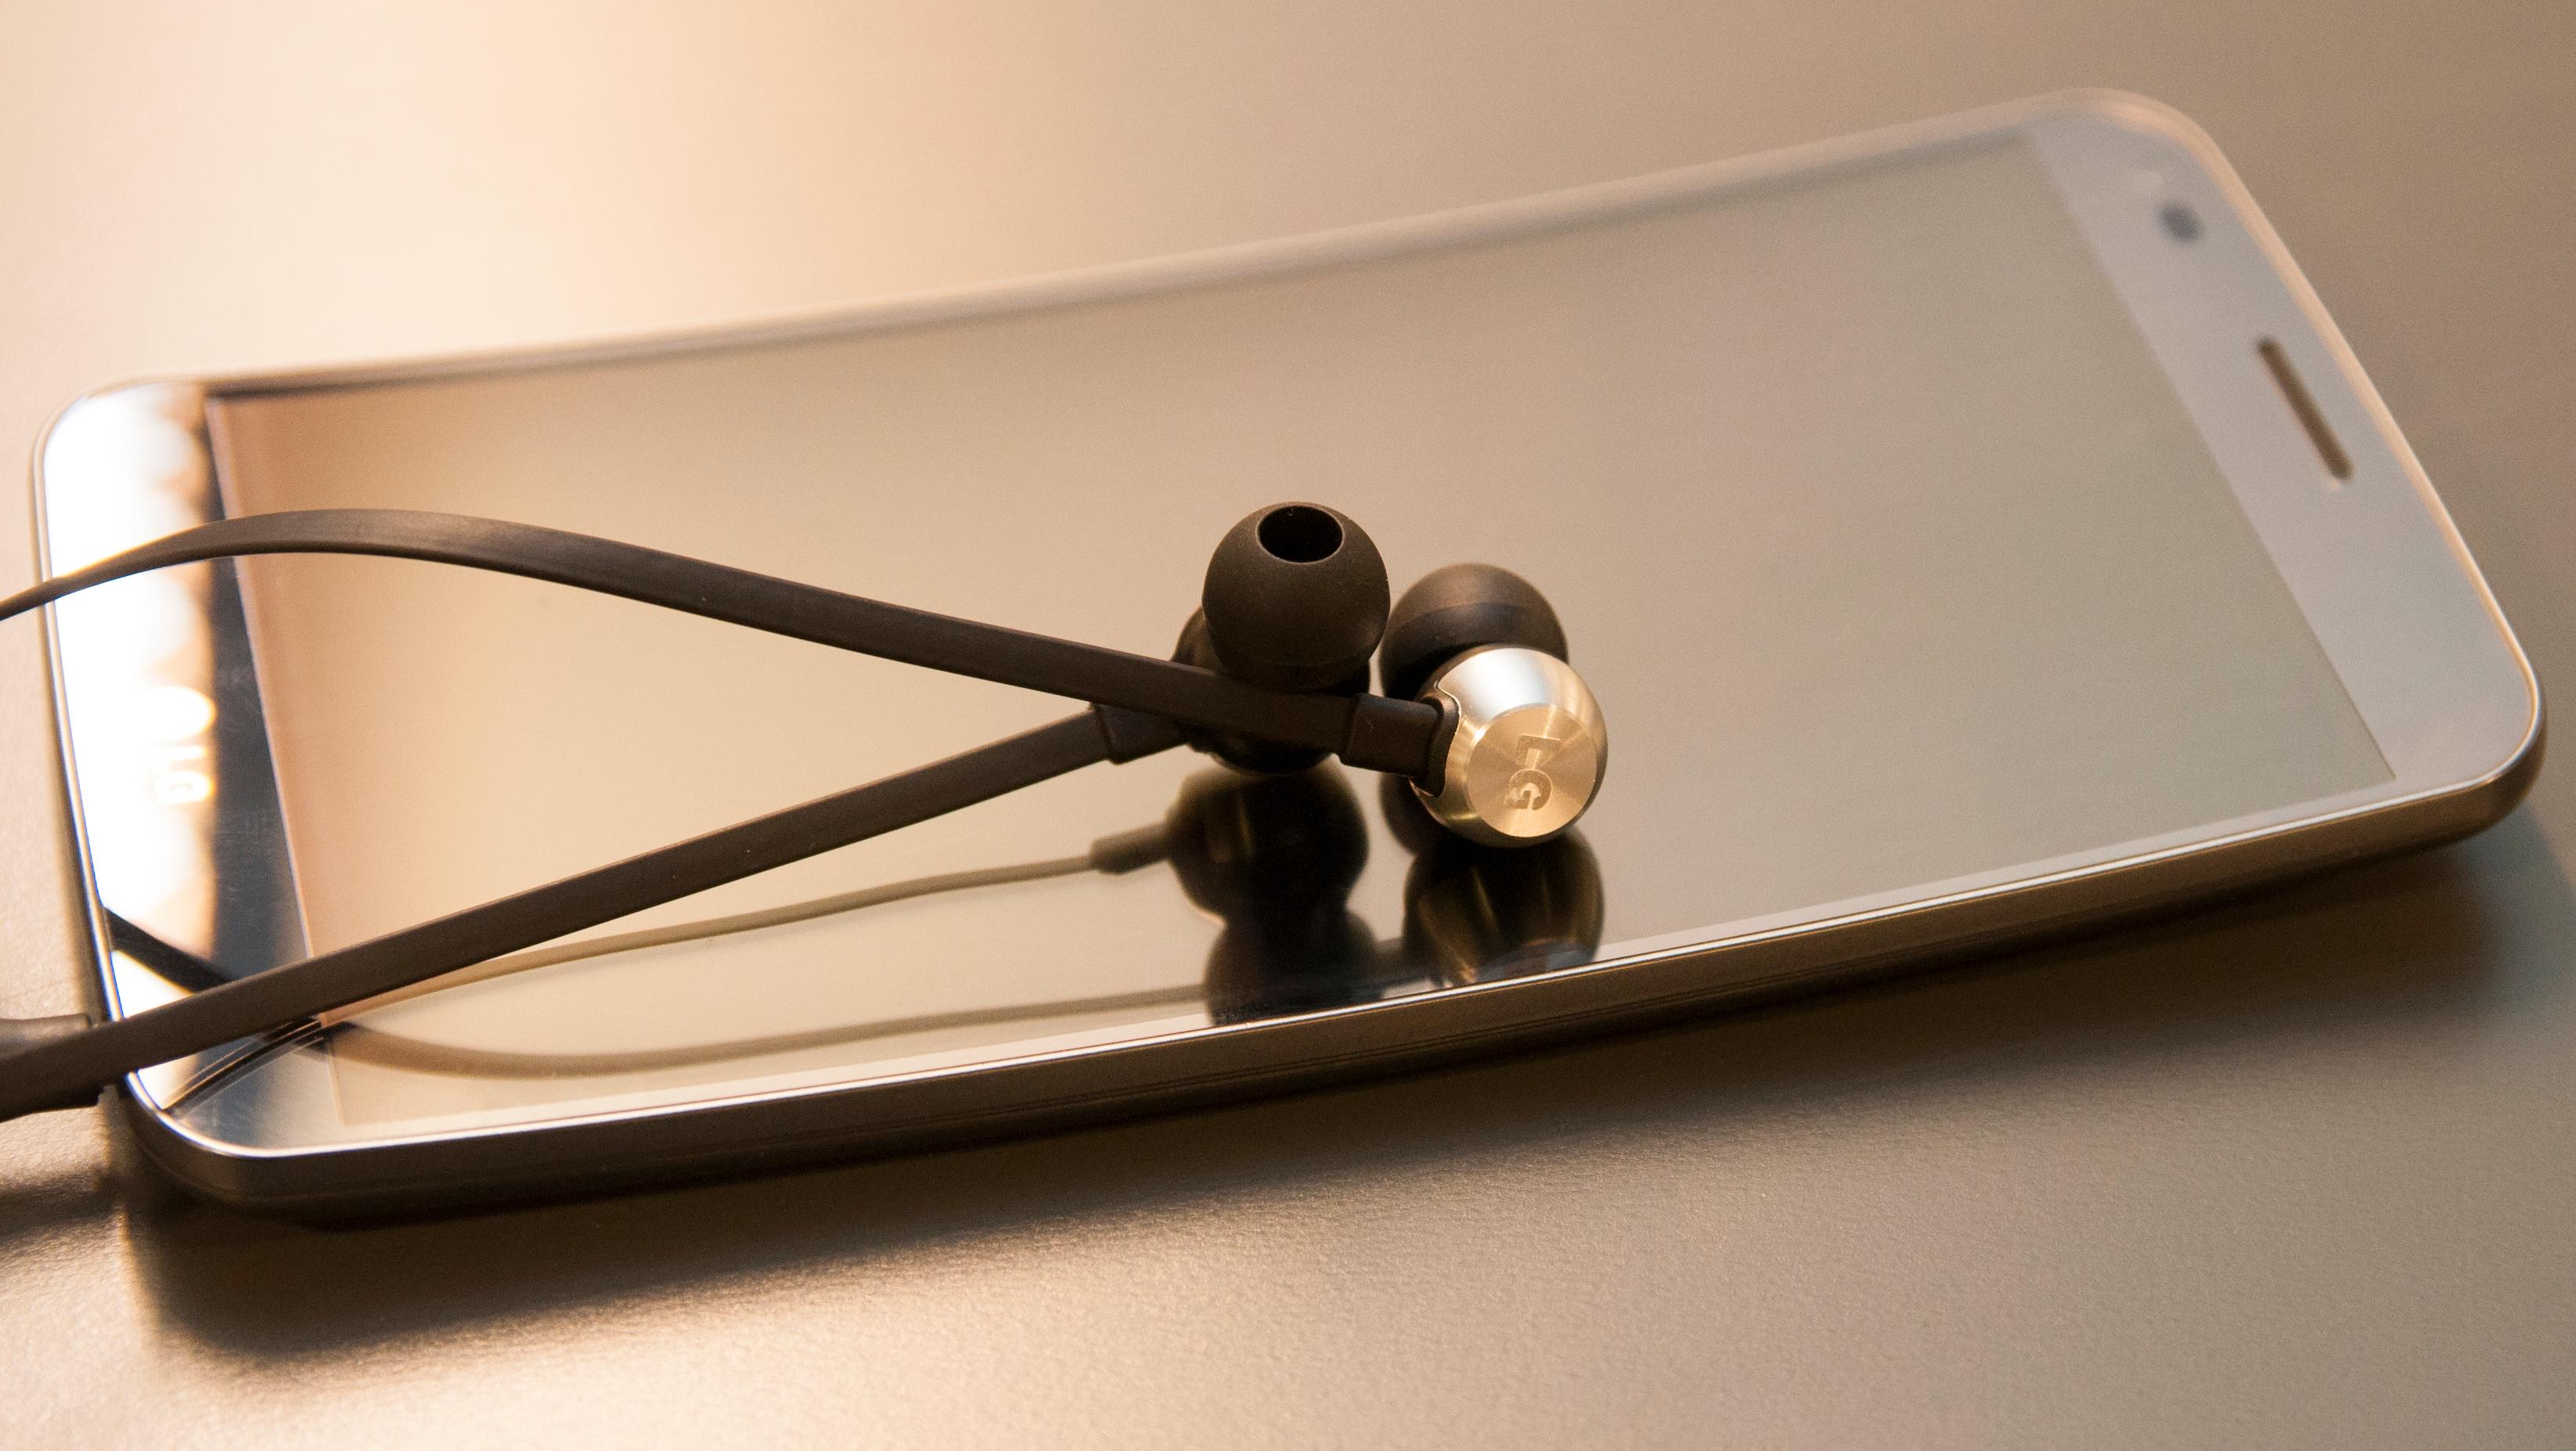 Det er svært gode ørepropper som følger med LG G Flex. Skal du ha bedre lyd enn dette må du velge relativt kostbare øreplugger, eller hodetelefoner.Foto: Finn Jarle Kvalheim, Amobil.no